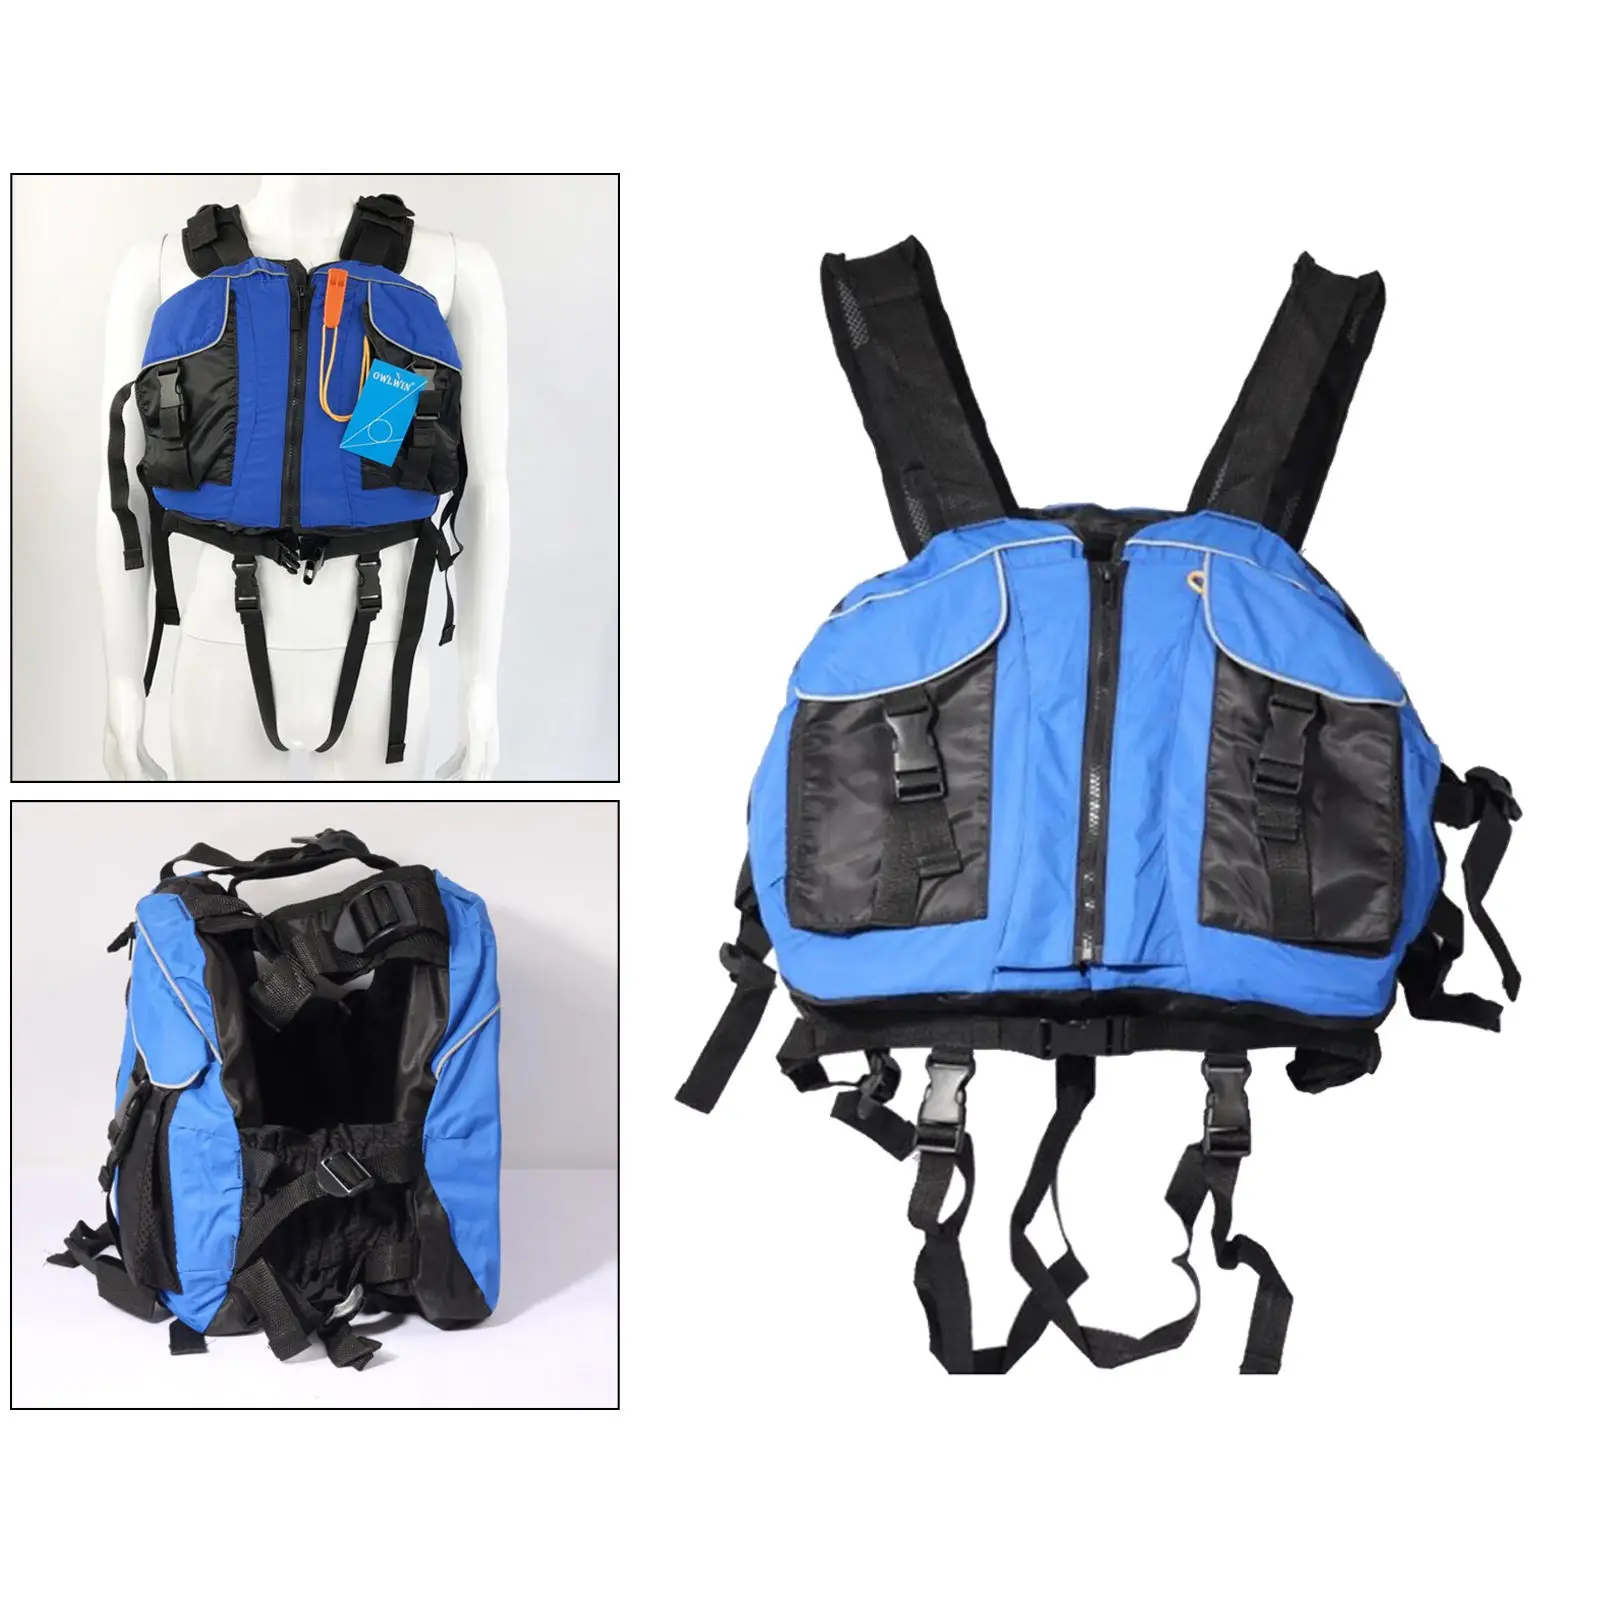 Breathable Foam Life Jacket Life Vest Securing Personal Floatation Device Personal Floatation Device Kayak Boating Equipments